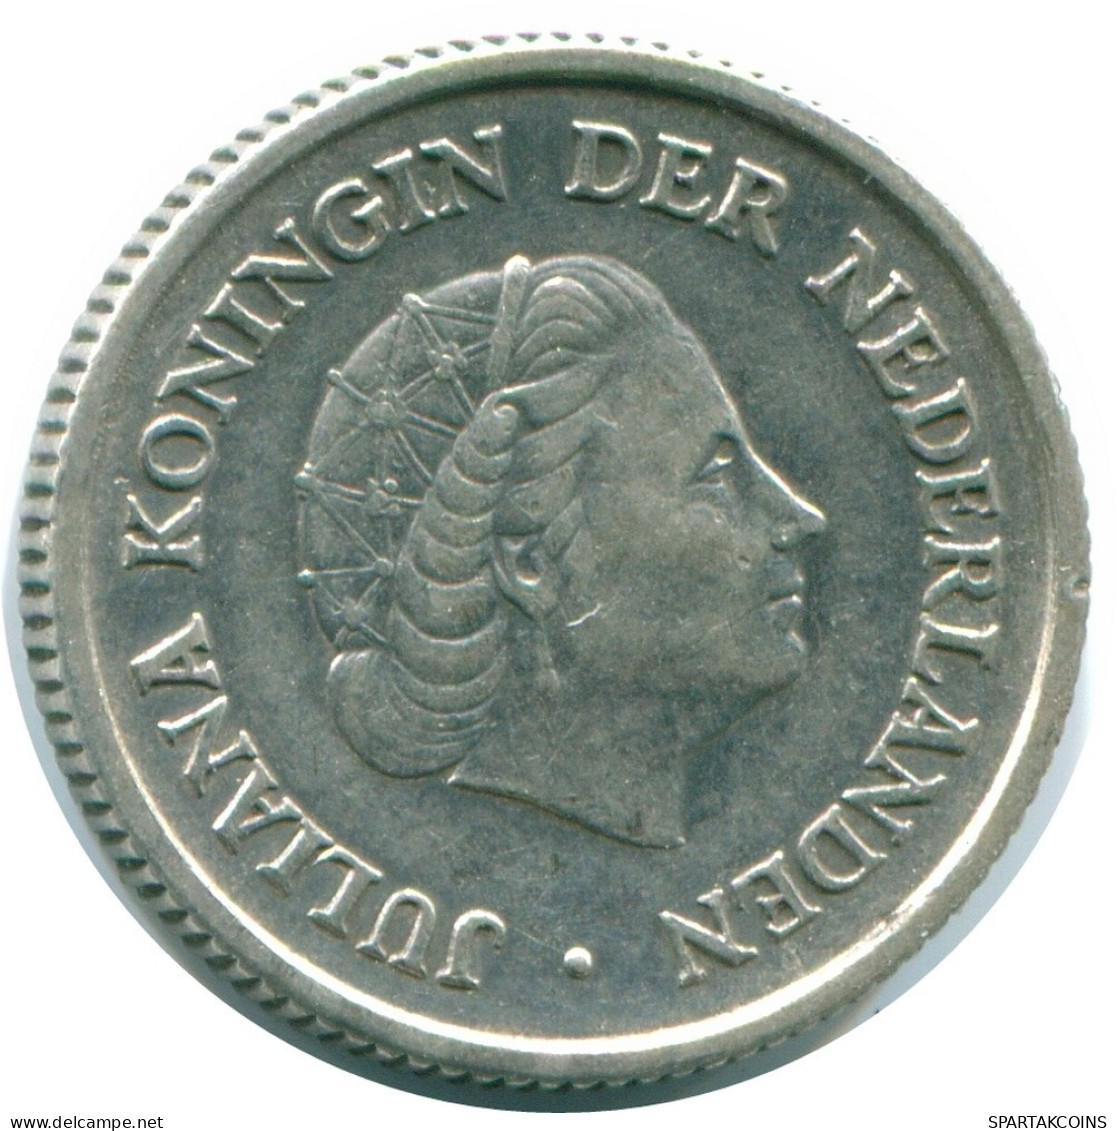 1/4 GULDEN 1957 NIEDERLÄNDISCHE ANTILLEN SILBER Koloniale Münze #NL10981.4.D.A - Antille Olandesi